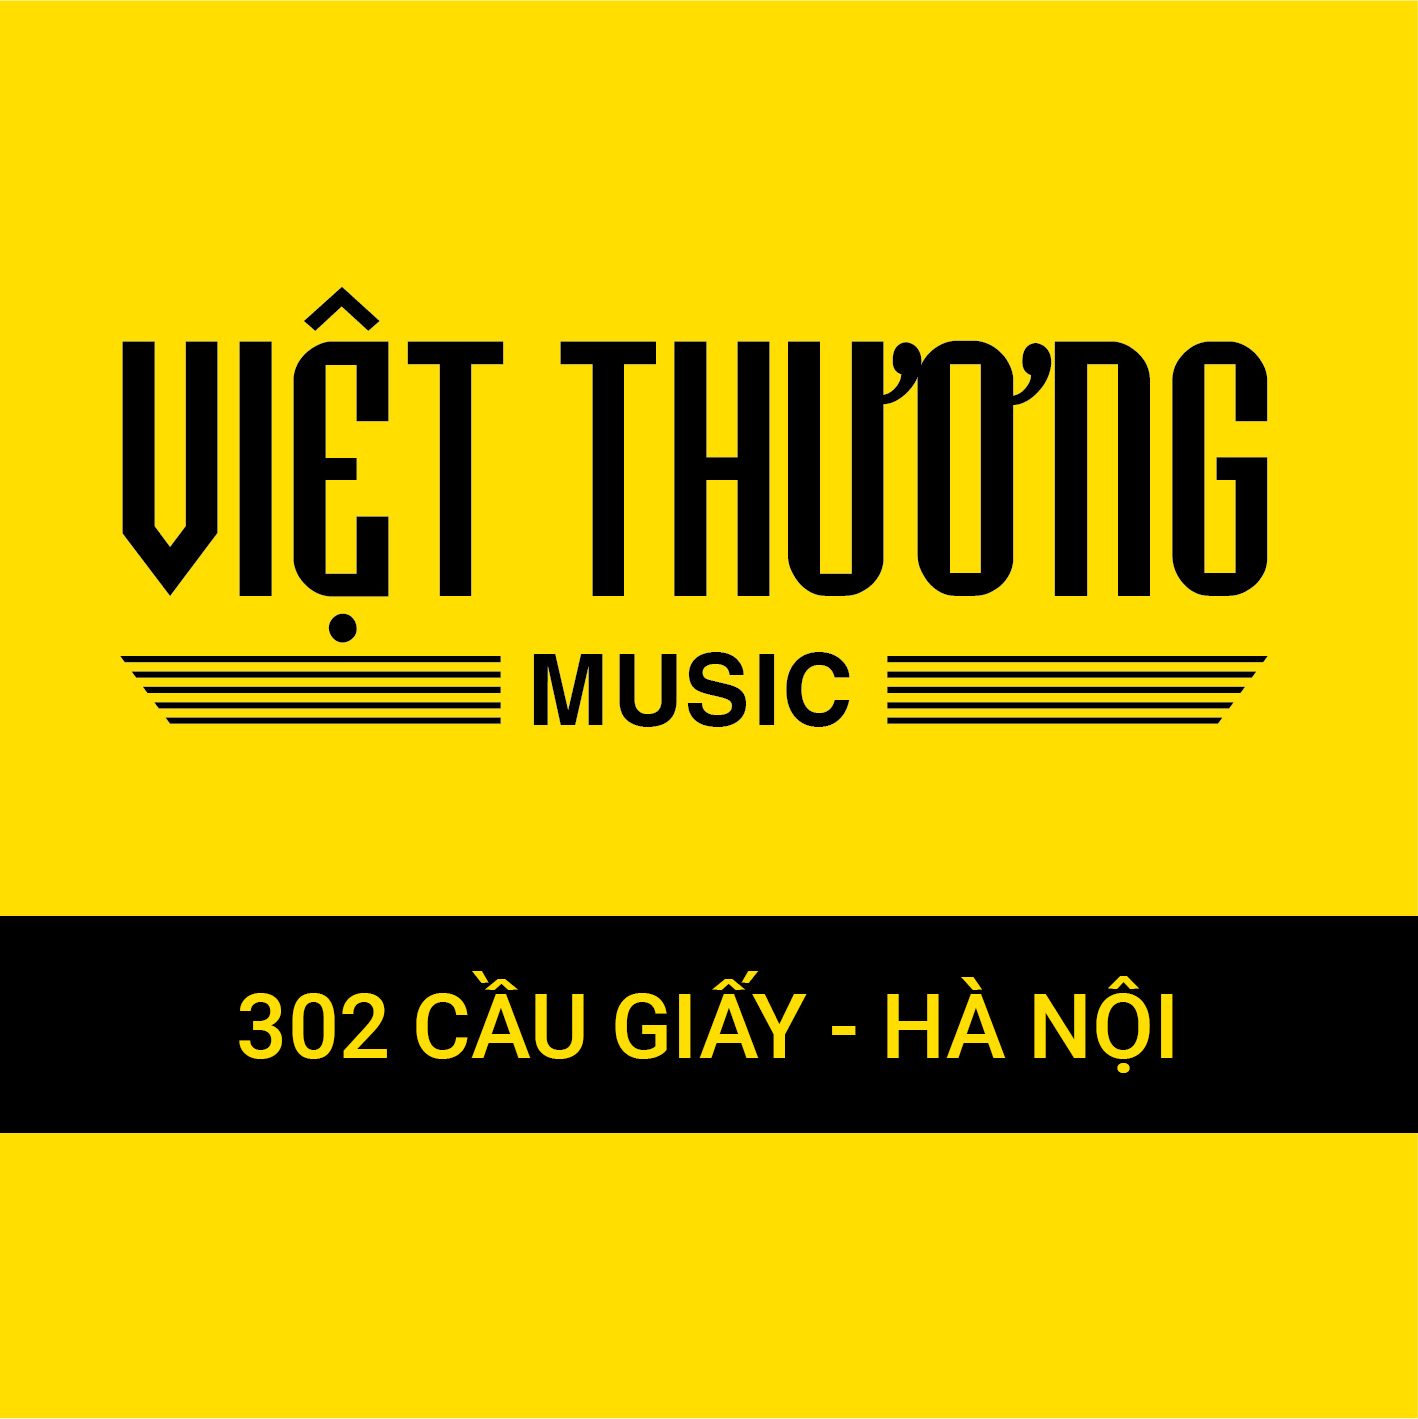 Việt Thương Music Quận Cầu Giấy